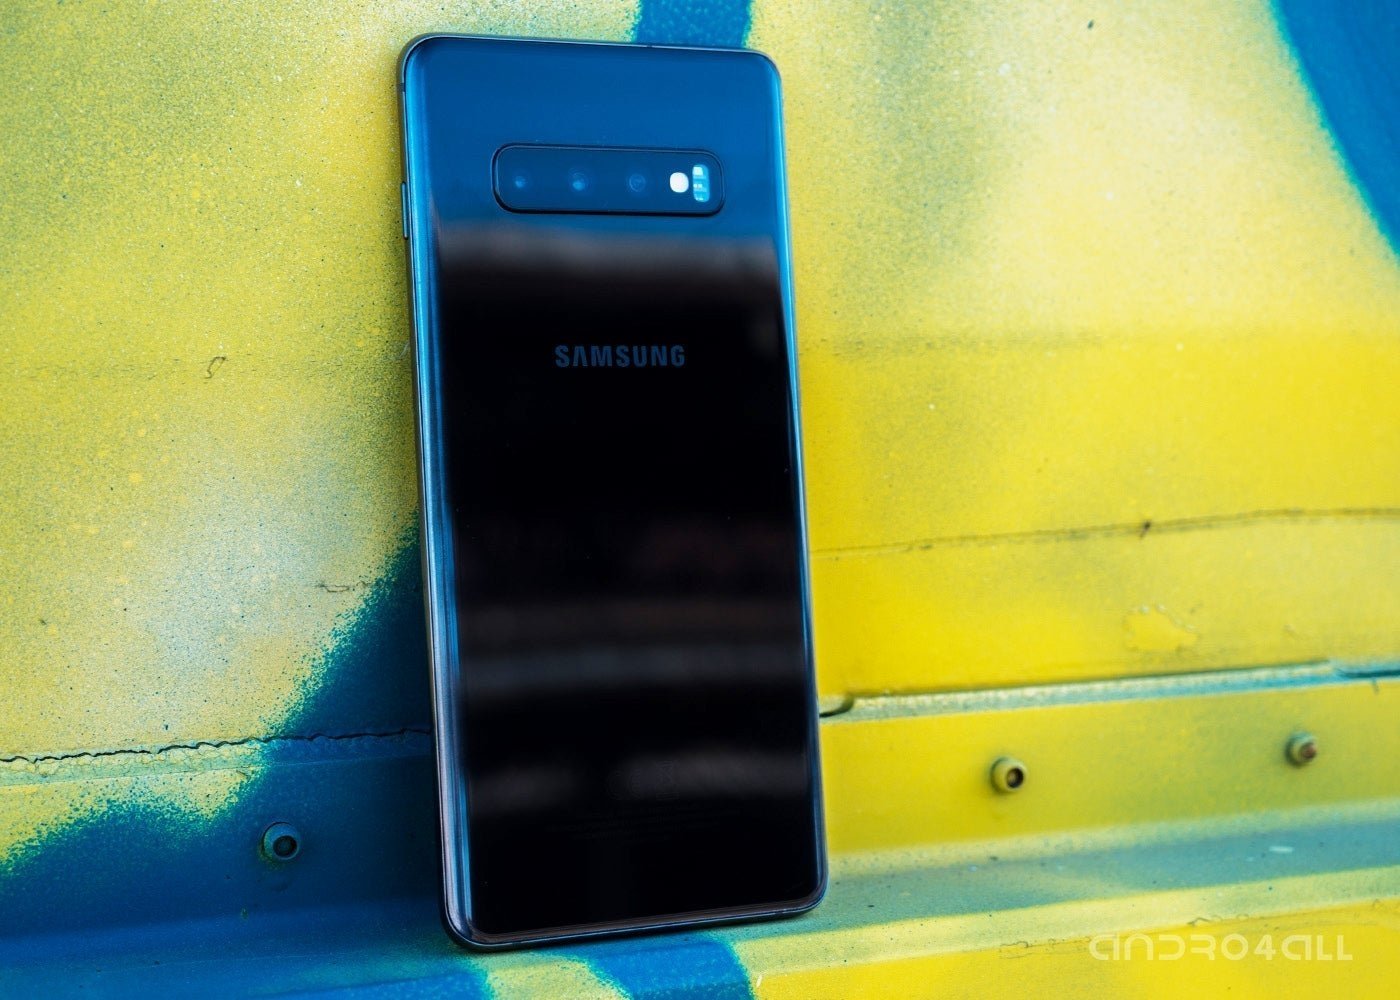 Samsung Galaxy S10 Plus, imagen destacada de la parte trasera